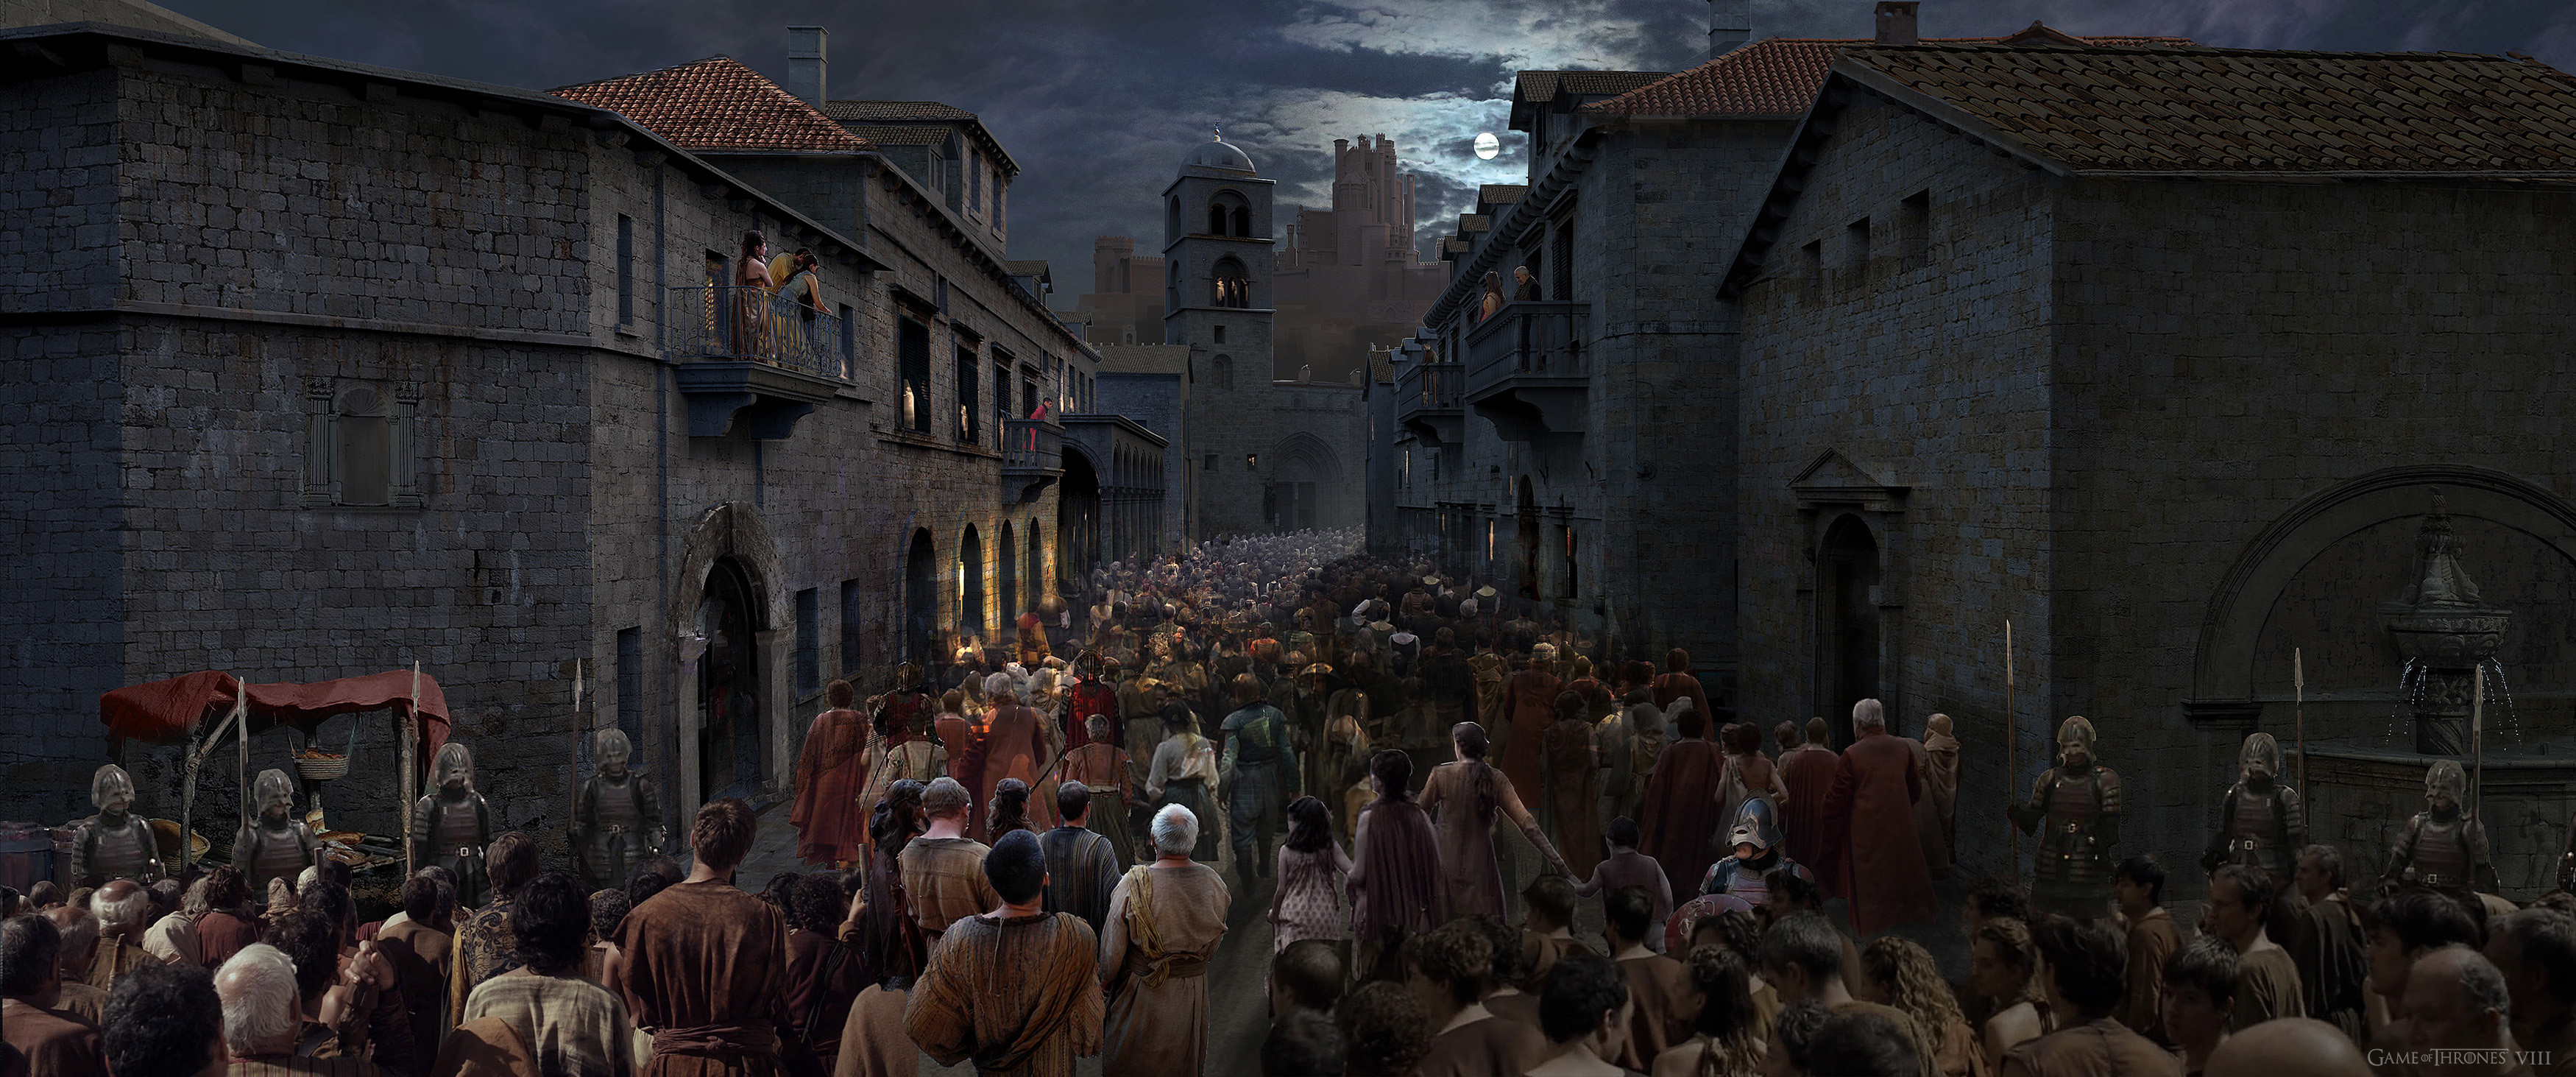 Main street - The masses enter Kingslanding